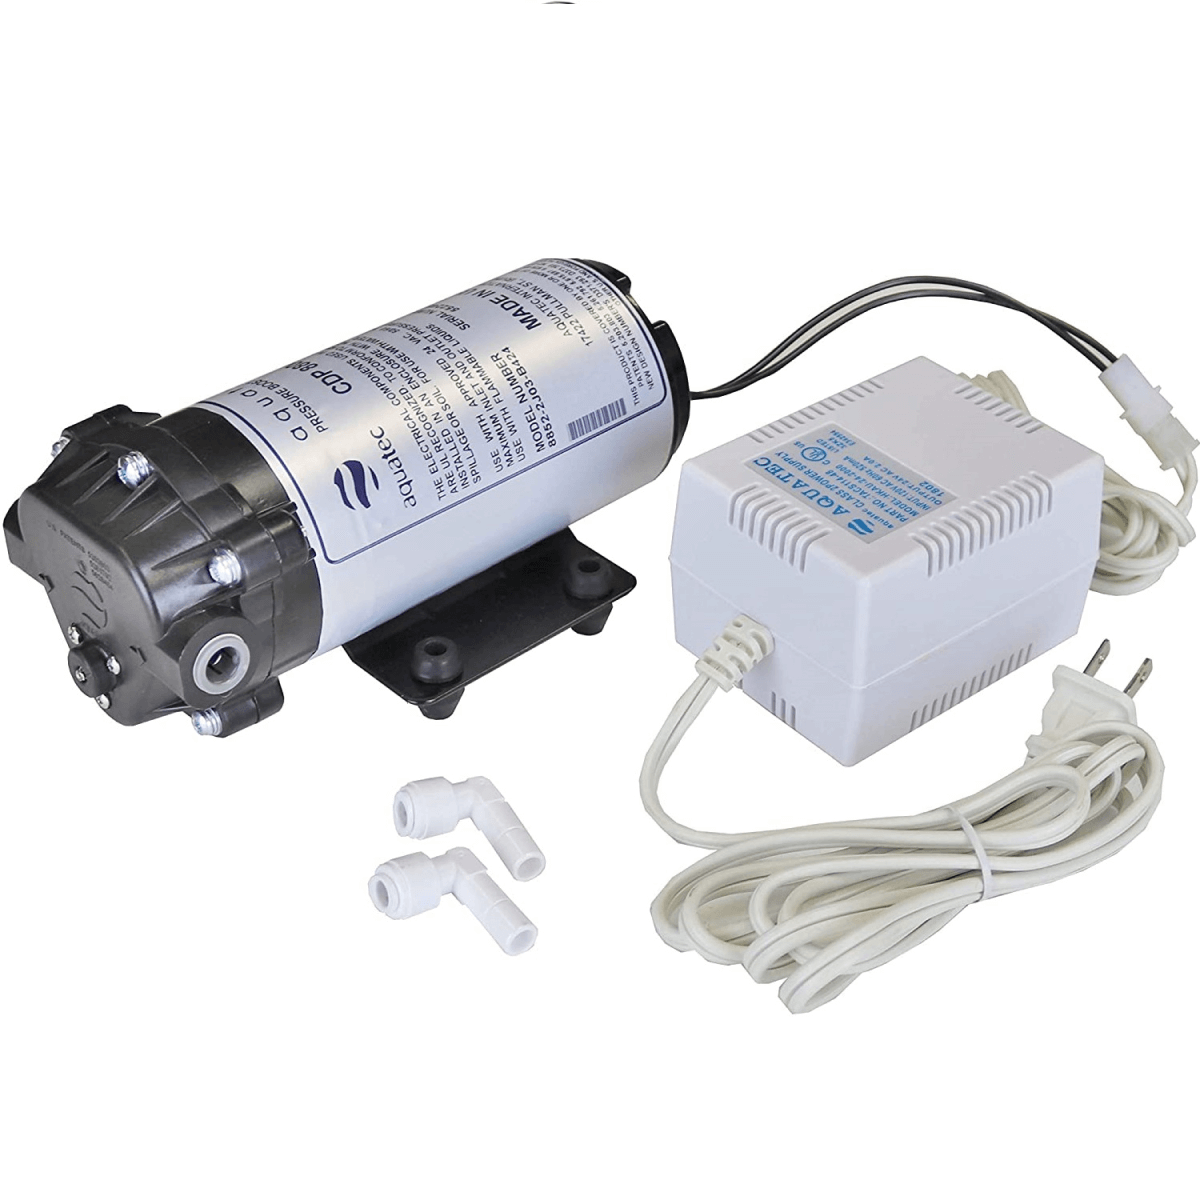 Aquatec CDP 8800 Water Pressure Booster Pump 125 PSI, 3/8 JG, 24 VAC